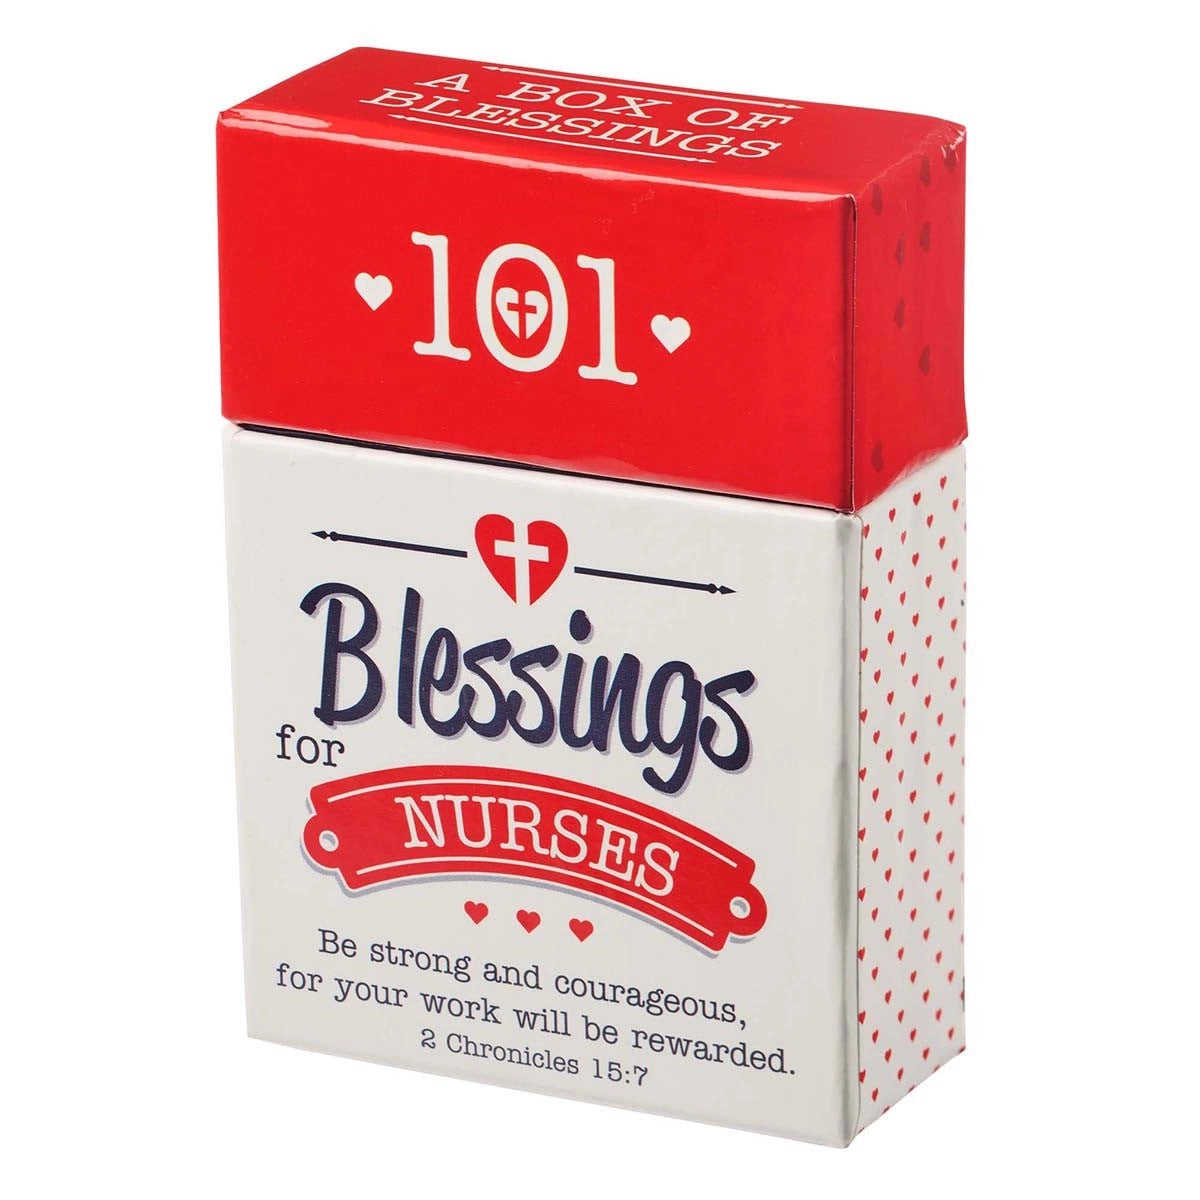 101 Blessings for Nurses